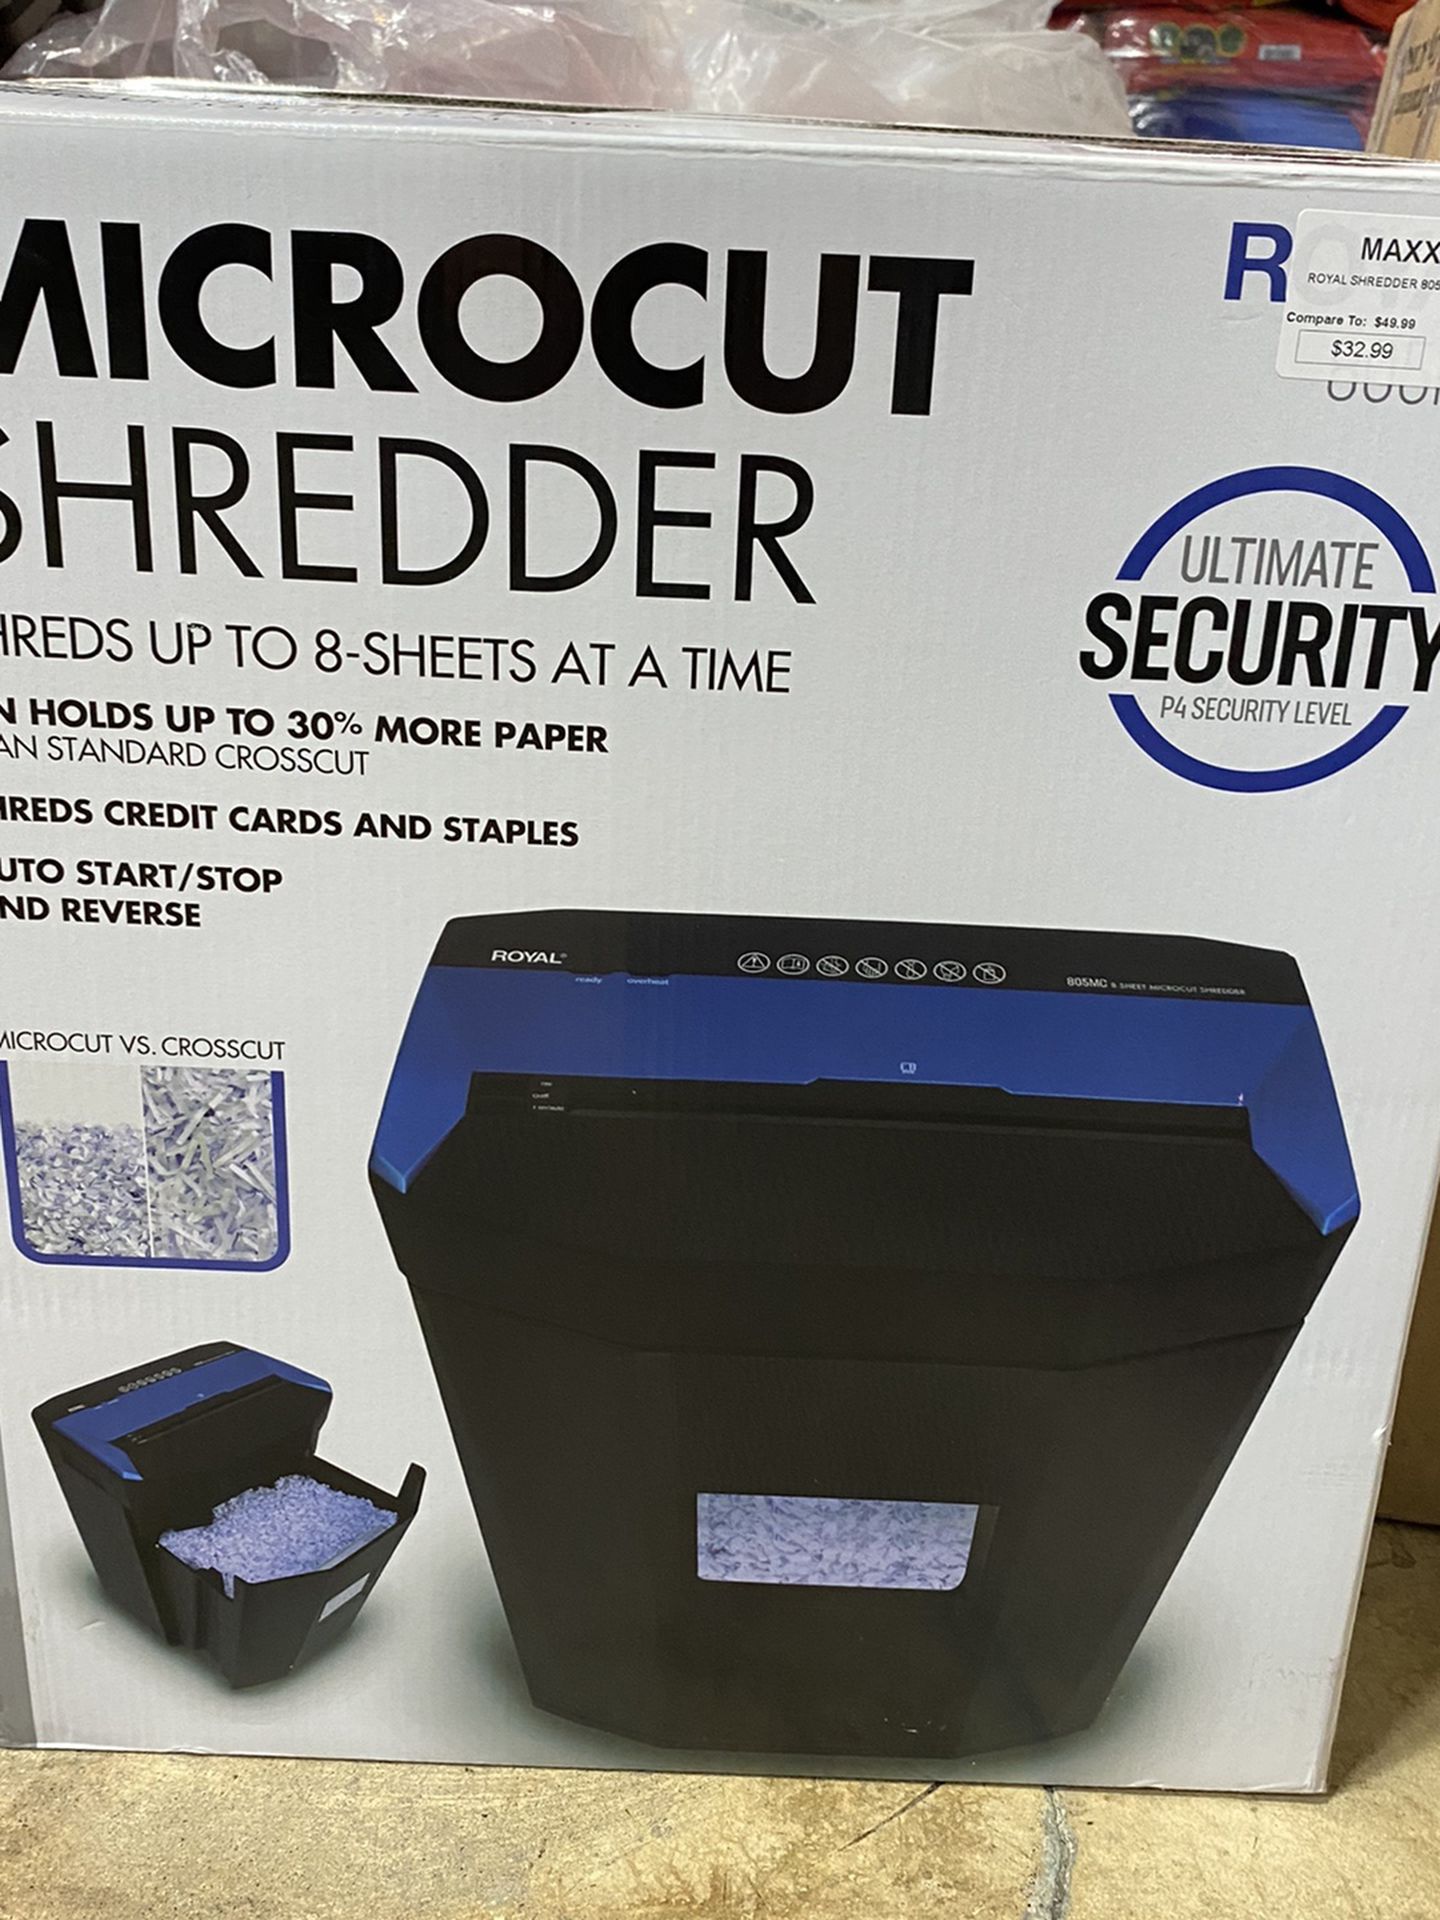 Micro cut Shredder